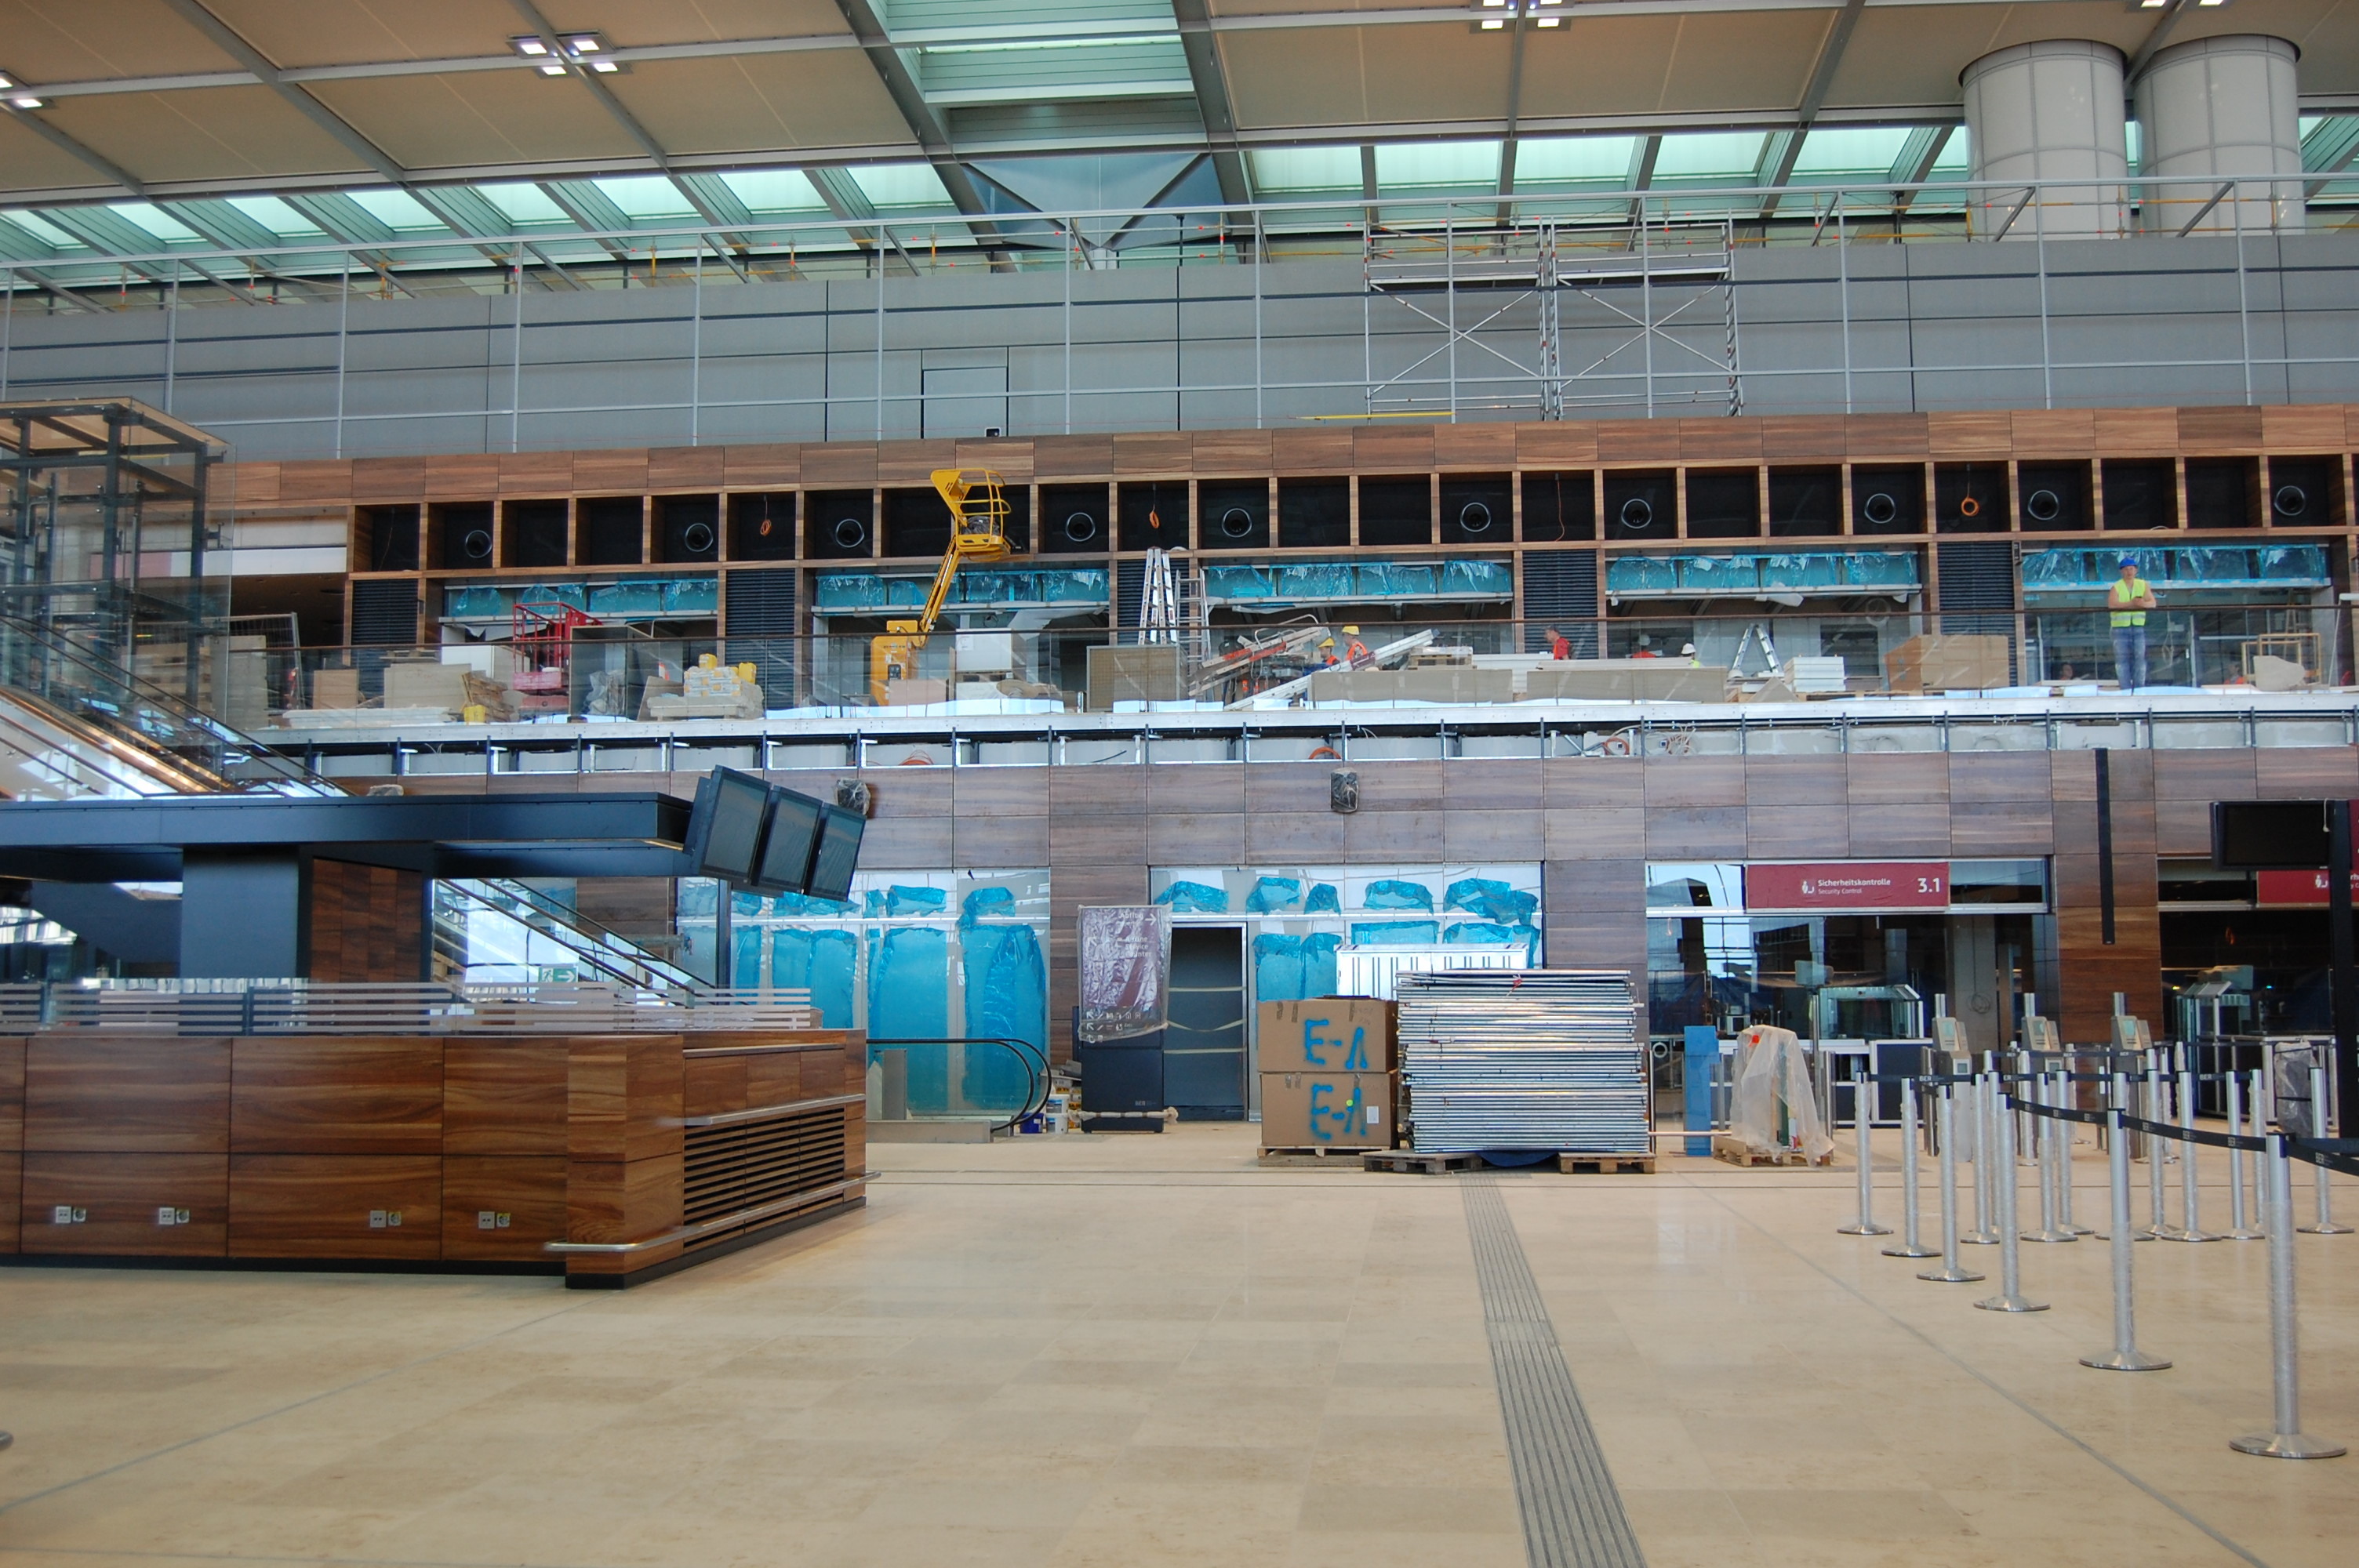 Αναβλήθηκαν και πάλι τα εγκαίνια του νέου αεροδρομίου του Βερολίνου